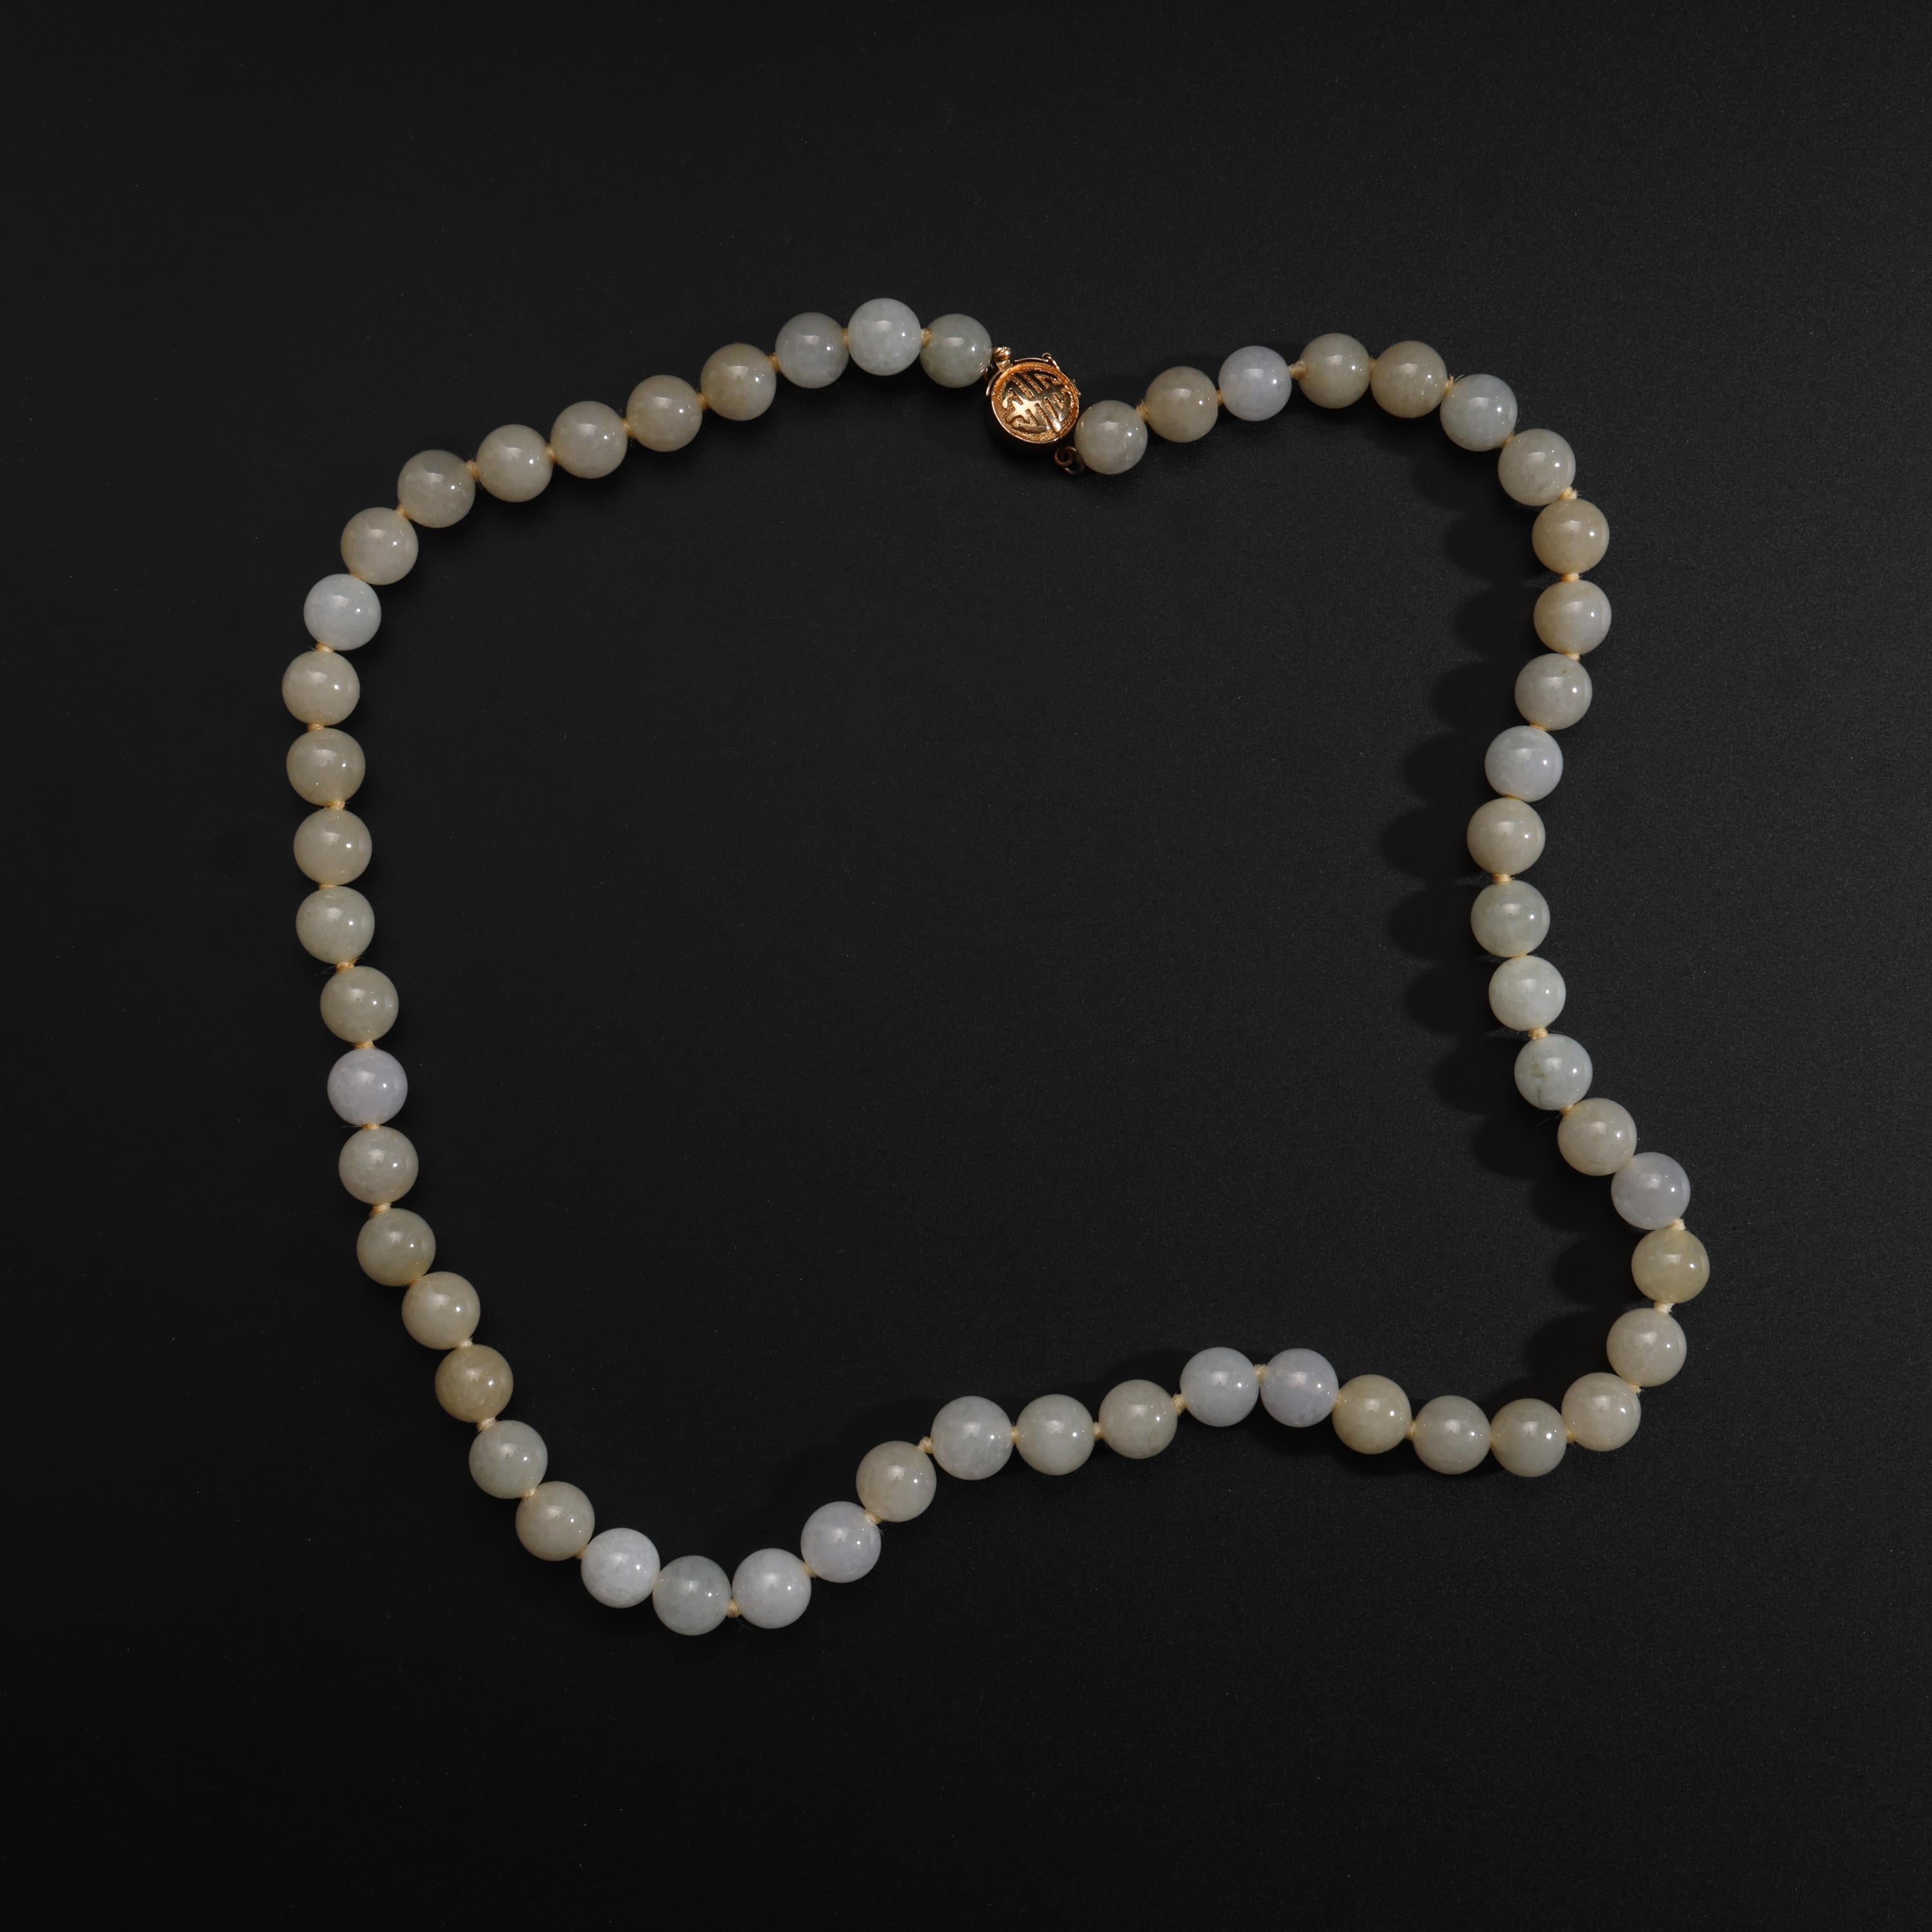 Ce magnifique collier éthéré en jadéite datant du milieu du siècle dernier a été créé par le détaillant emblématique de San Francisco, Gump's, vers 1970. 

Les perles de jade lumineuses et translucides, de couleur brouillard, mesurent environ 8,83